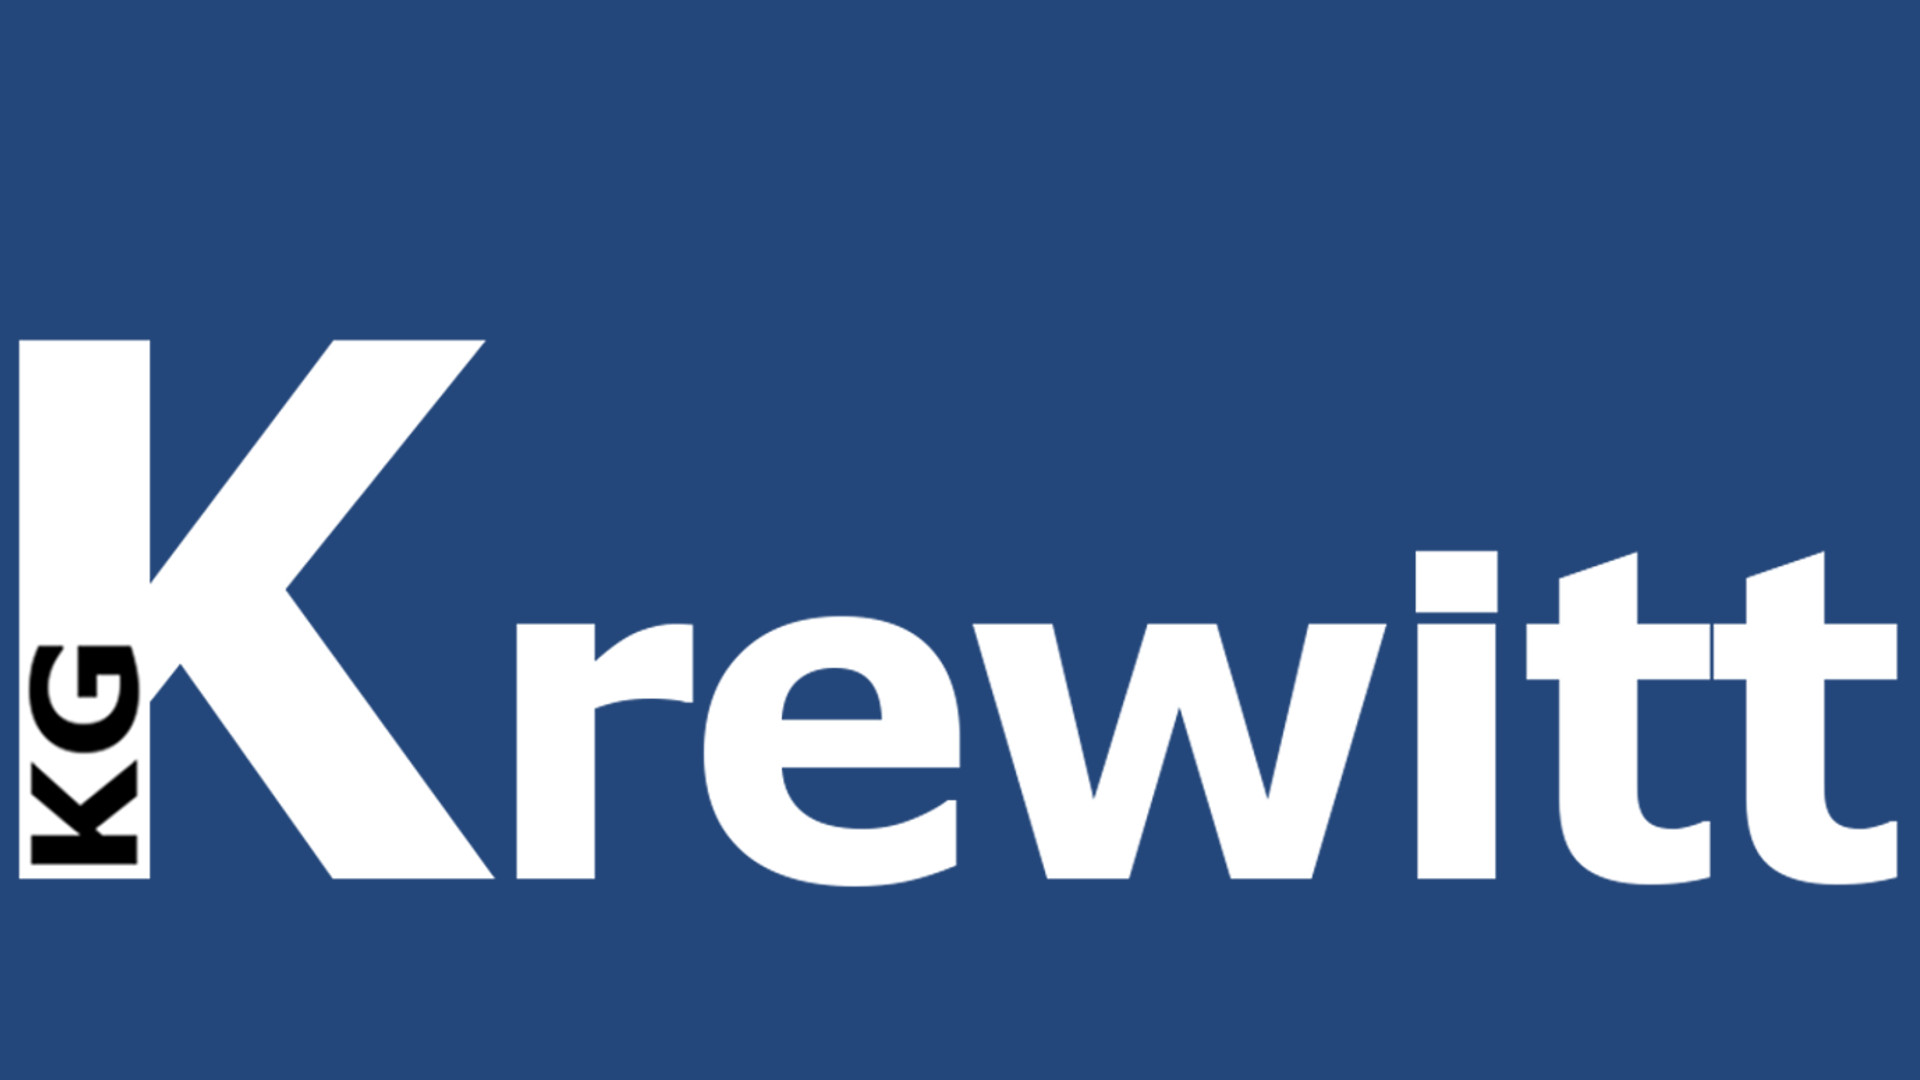 Logo Krewitt Blauer Hintergrund